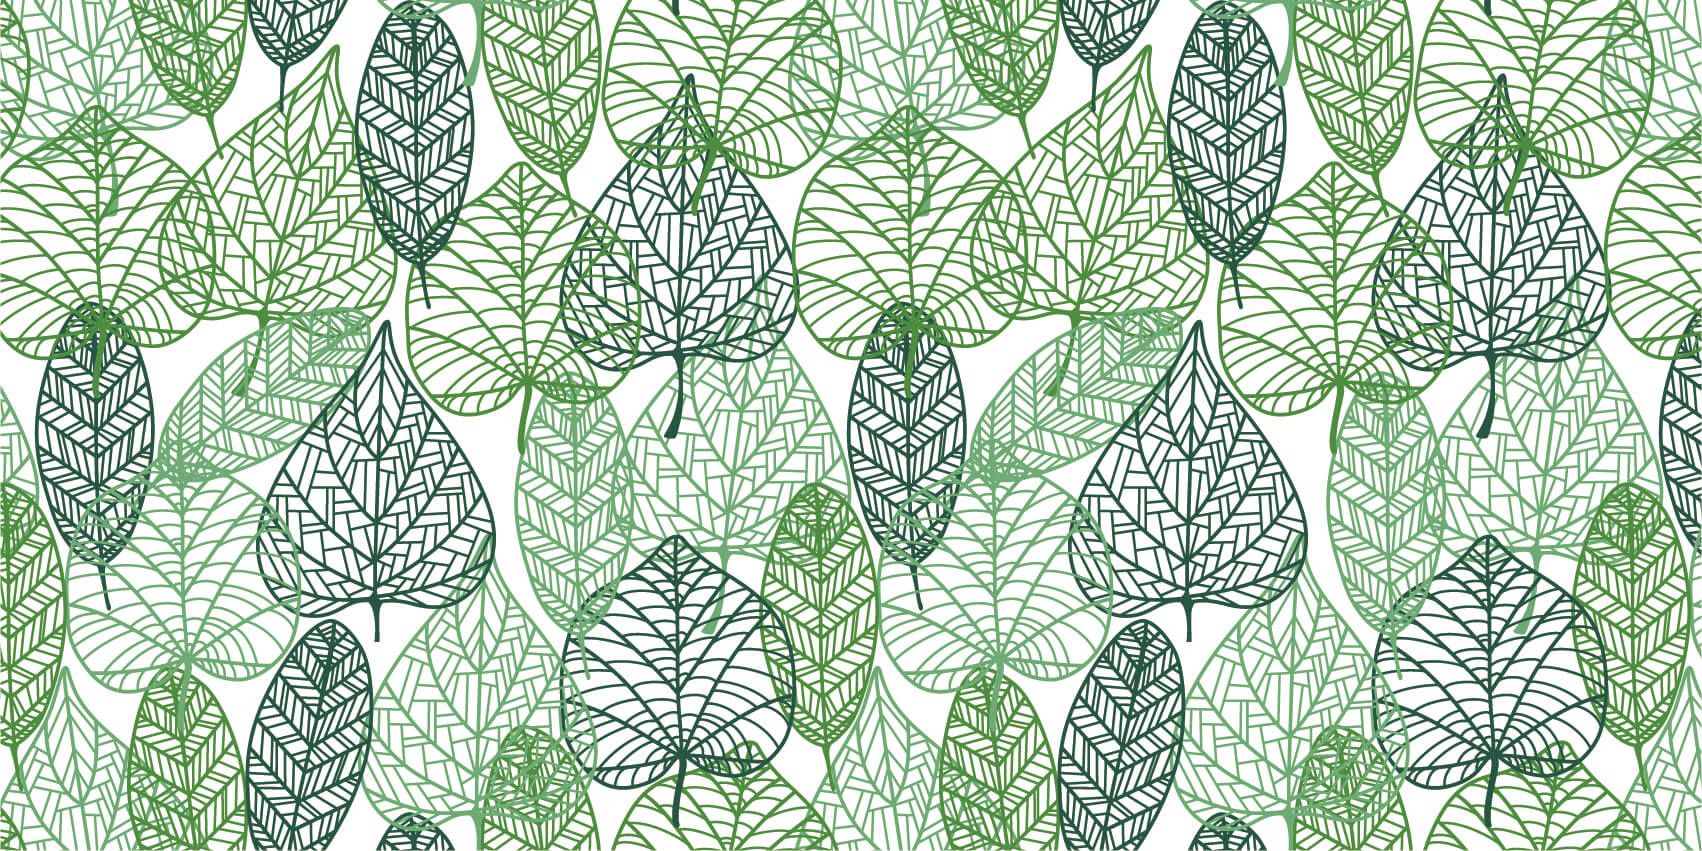 Leaves - Opengewerkte groene bladeren - Hobbykamer